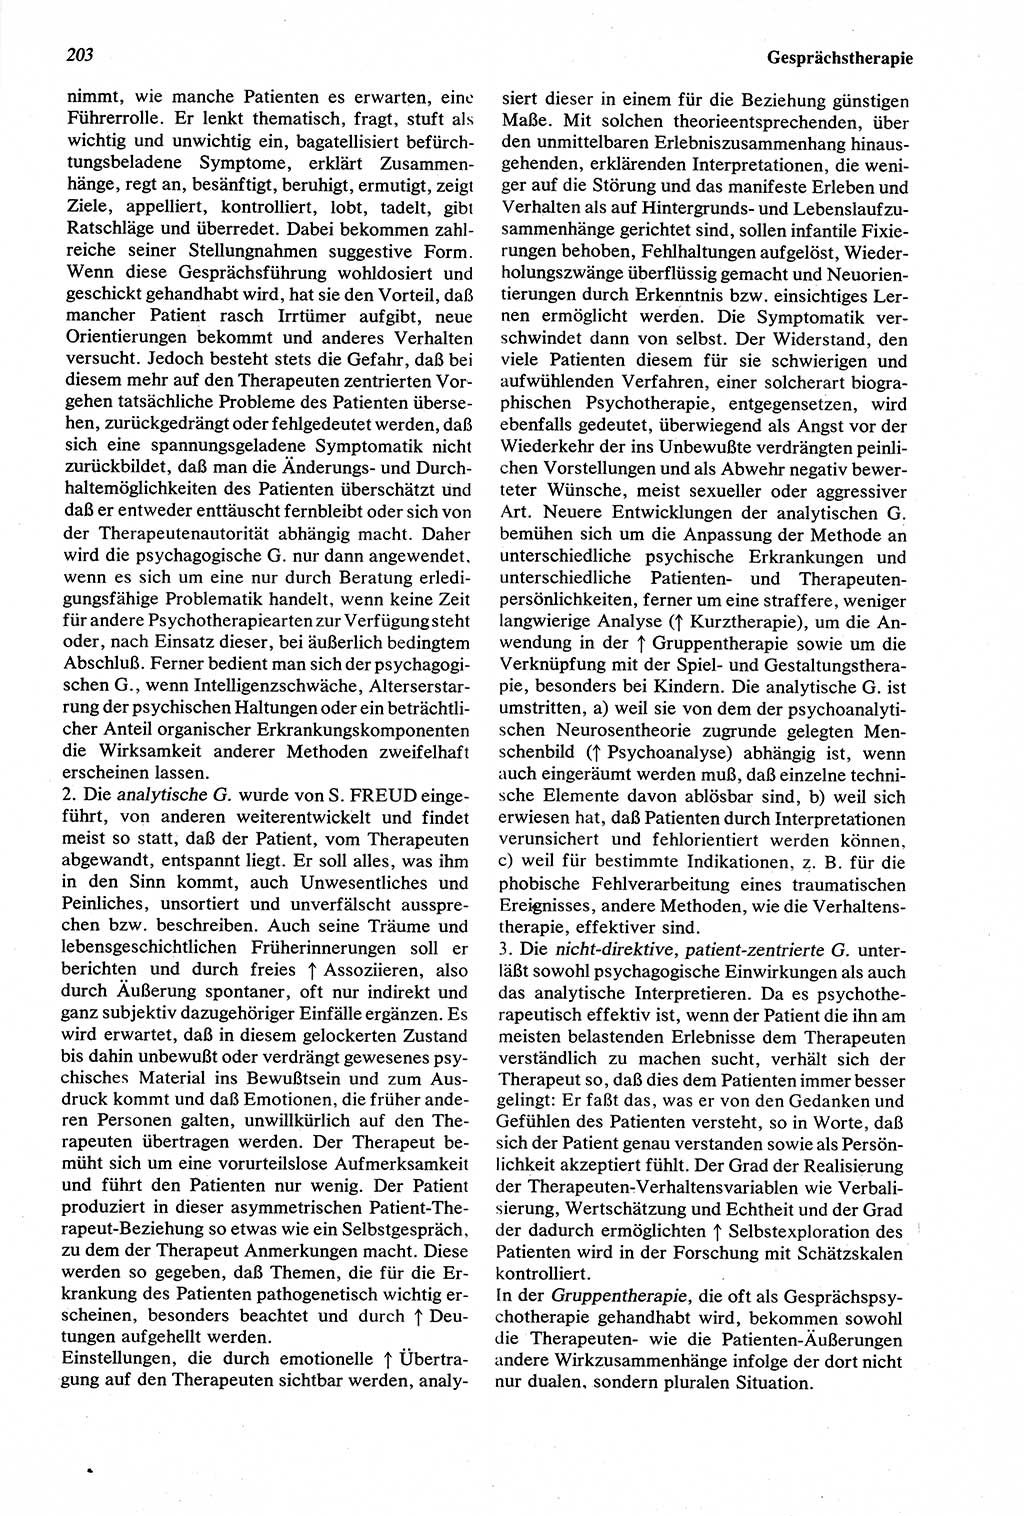 WÃ¶rterbuch der Psychologie [Deutsche Demokratische Republik (DDR)] 1976, Seite 203 (Wb. Psych. DDR 1976, S. 203)